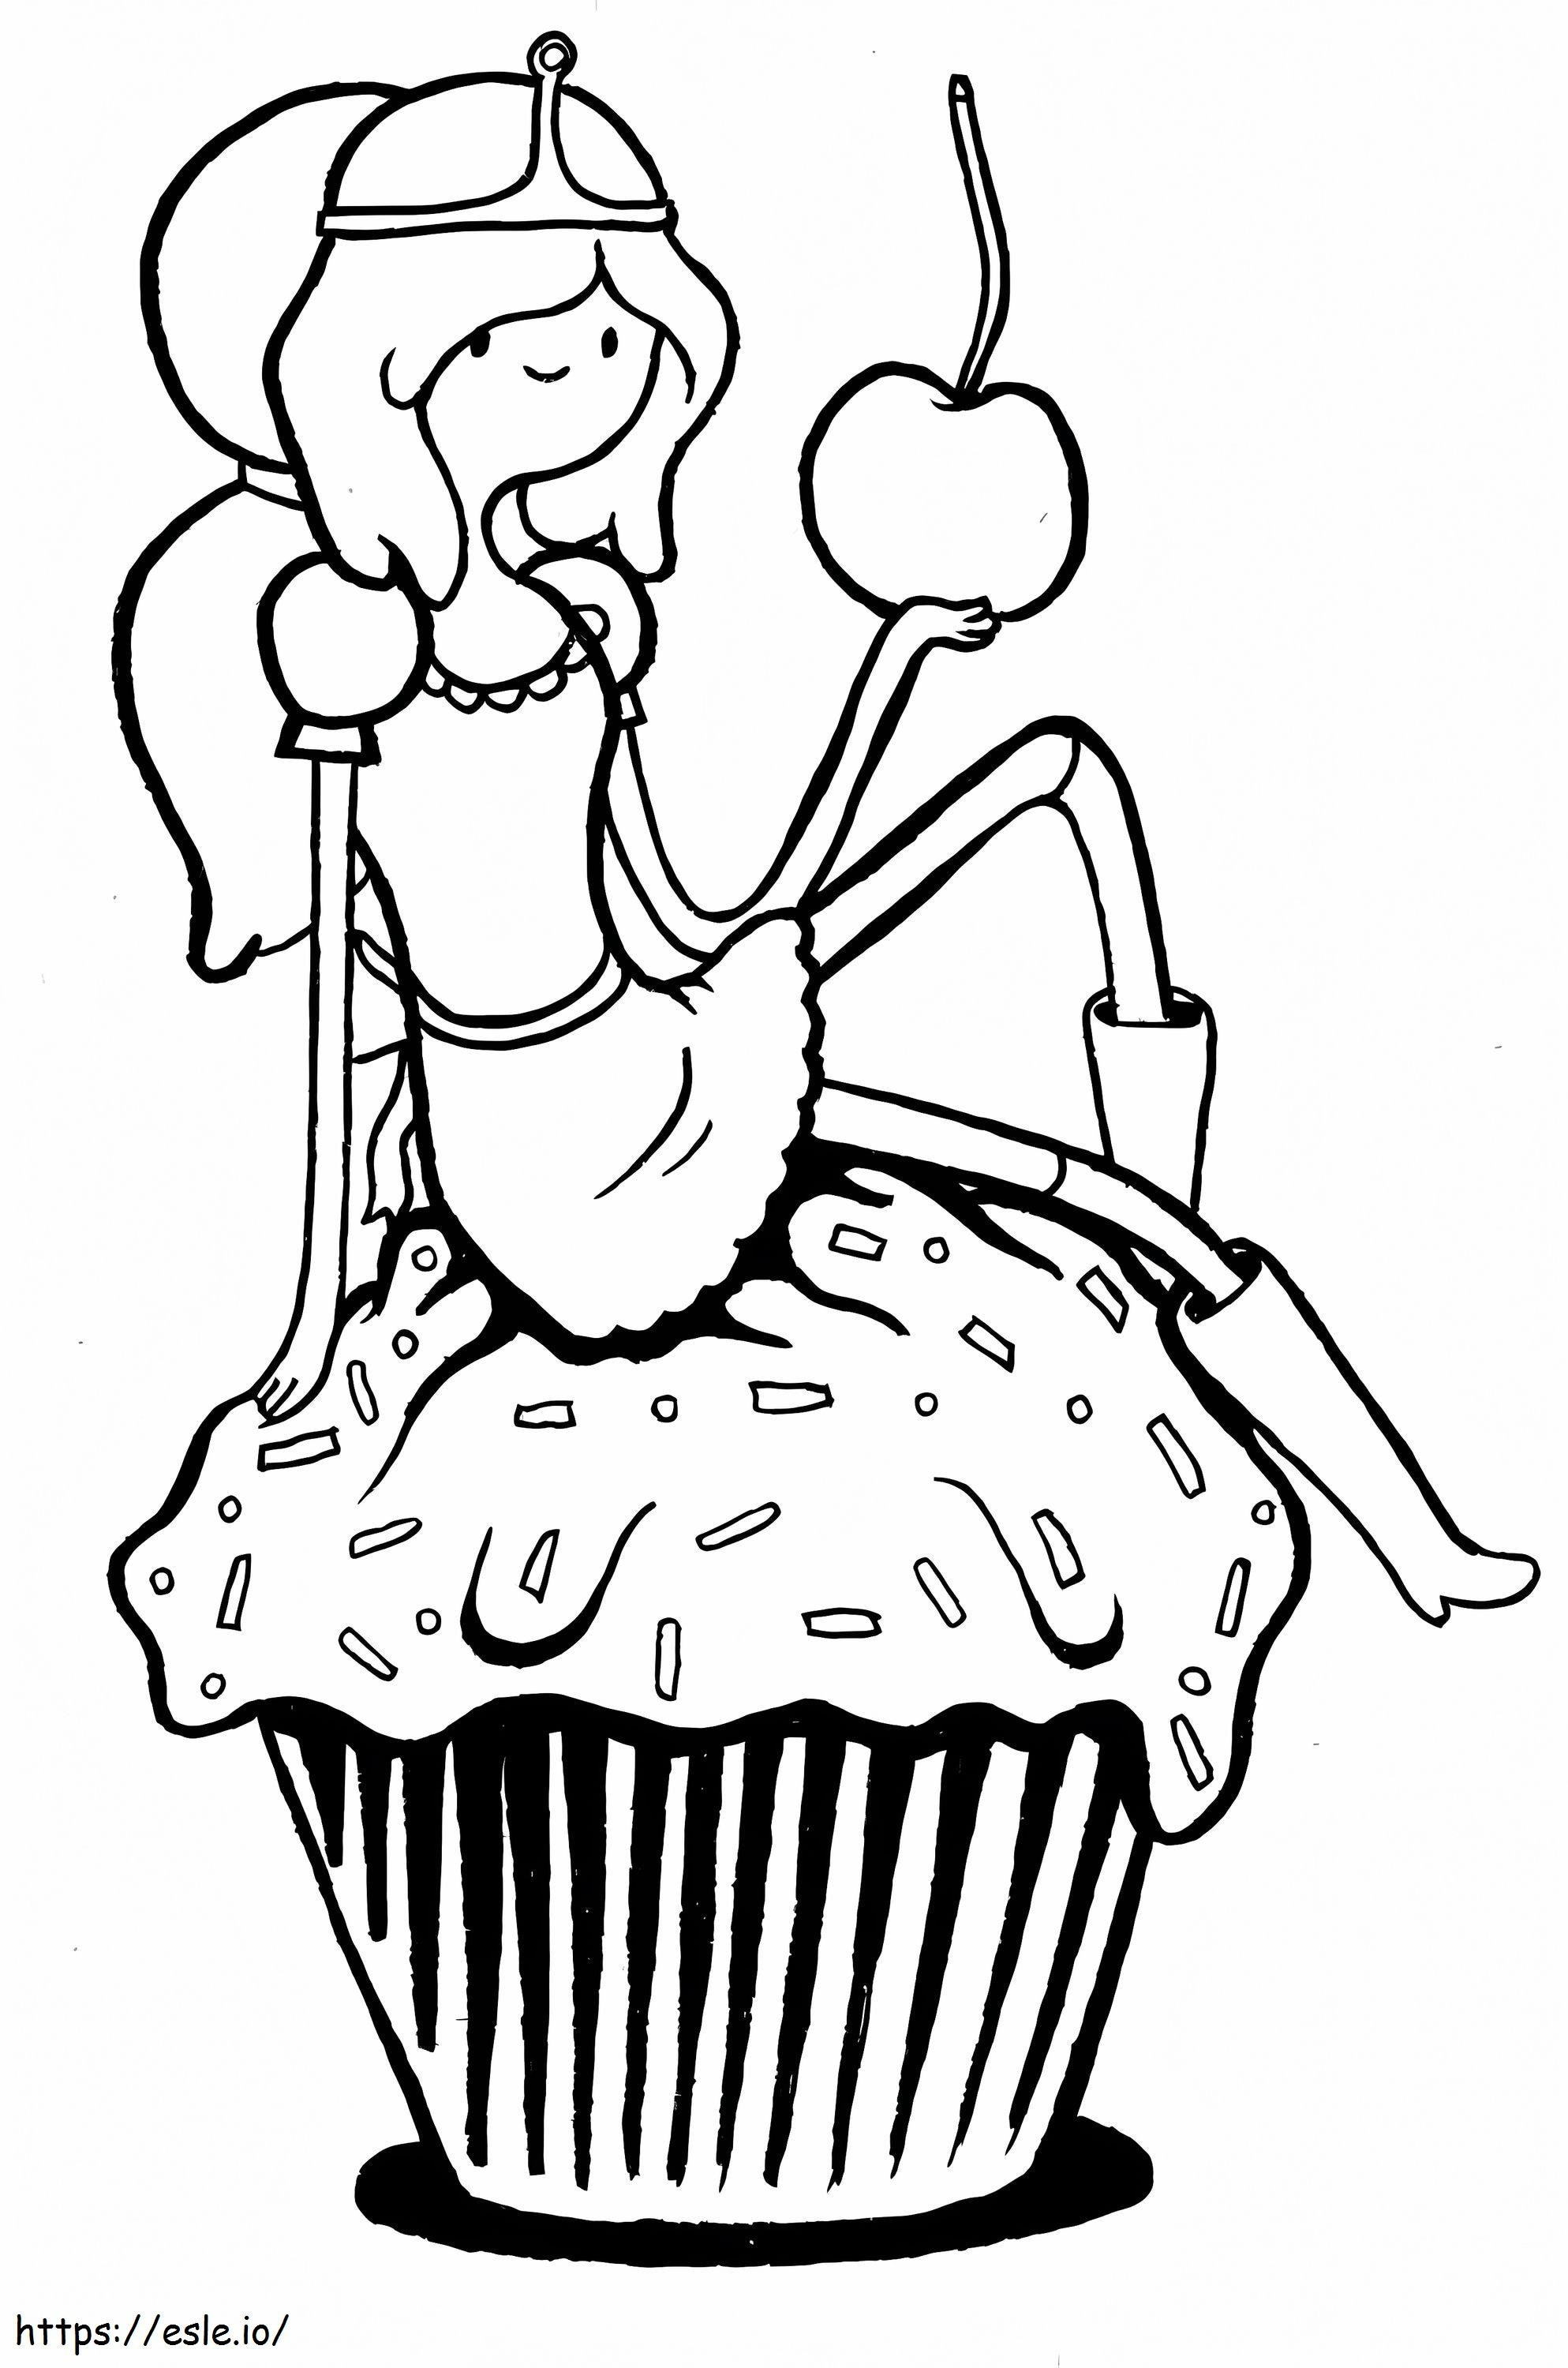 La Principessa Bubblegum Tieni la mela e siediti sul cupcake da colorare